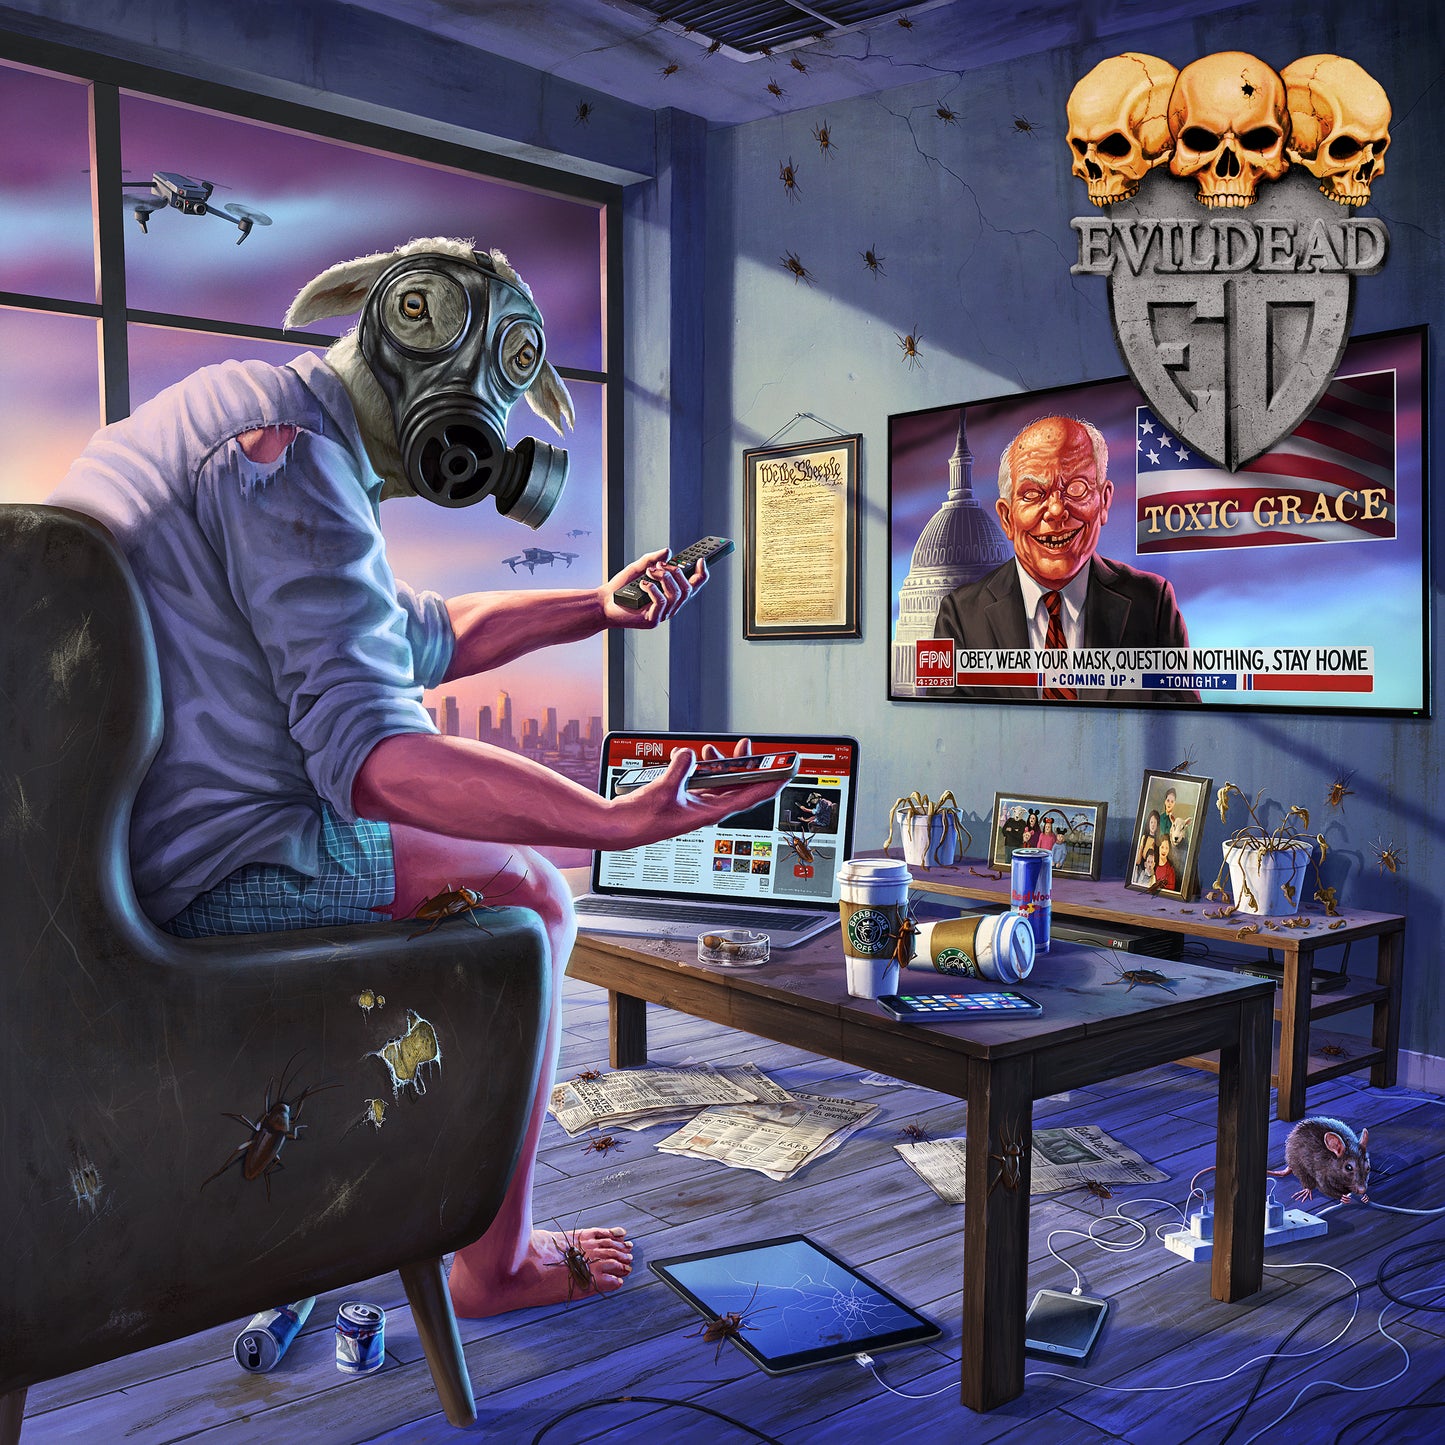 Evildead "Toxic Grace" exclusive LP-Bundle "Toxic"